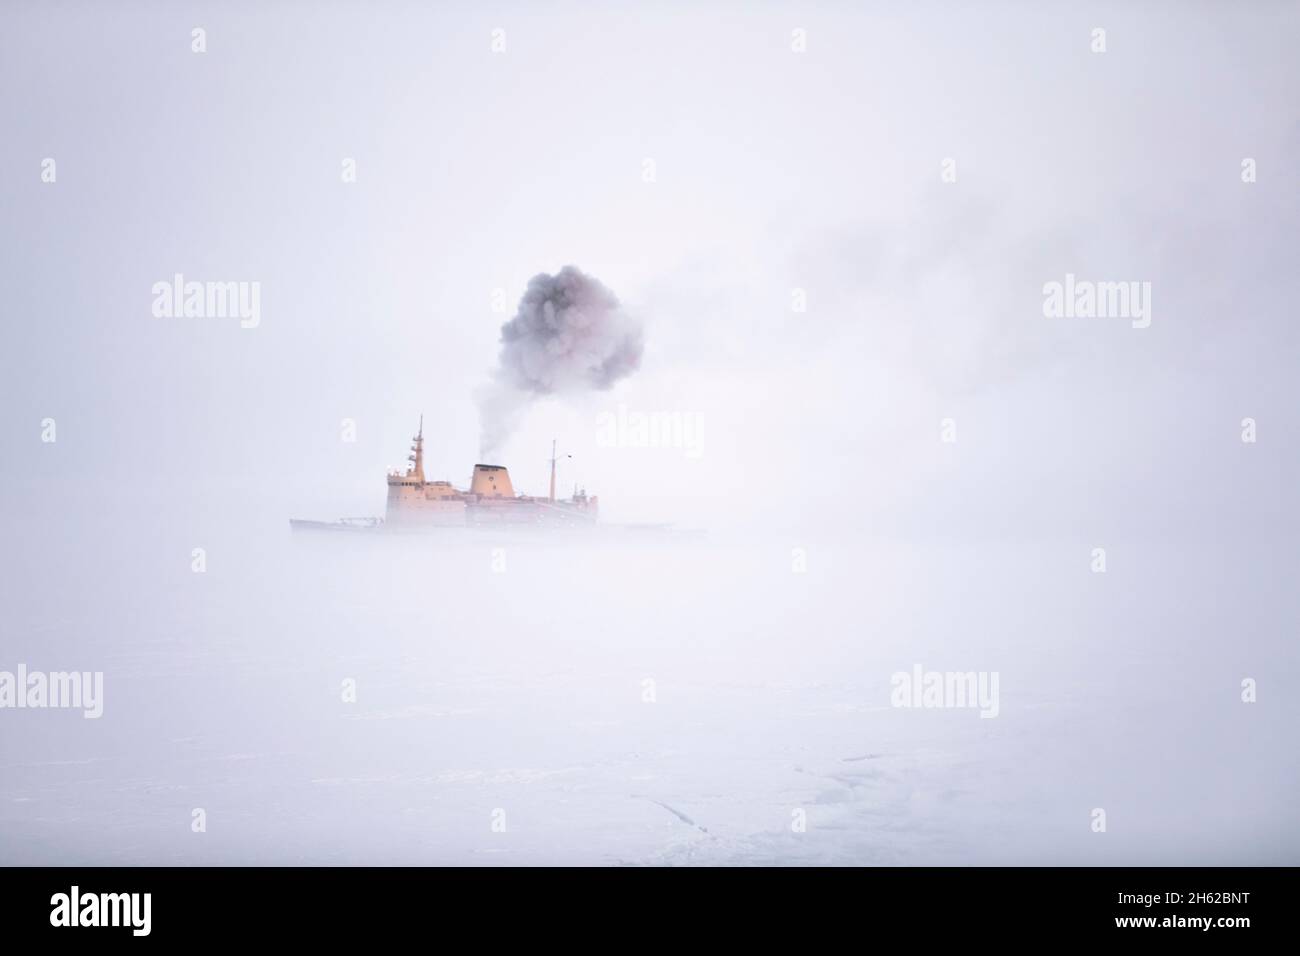 en marzo de 2020, el almirante makarov llegó al norte de la tierra de franz josef para reabastecer al rompehielos kapitan dranitsyn en su camino de vuelta de la expedición del mosaico. los gases de escape sirvieron como núcleos de condensación y causaron una espesa niebla alrededor del barco. Foto de stock